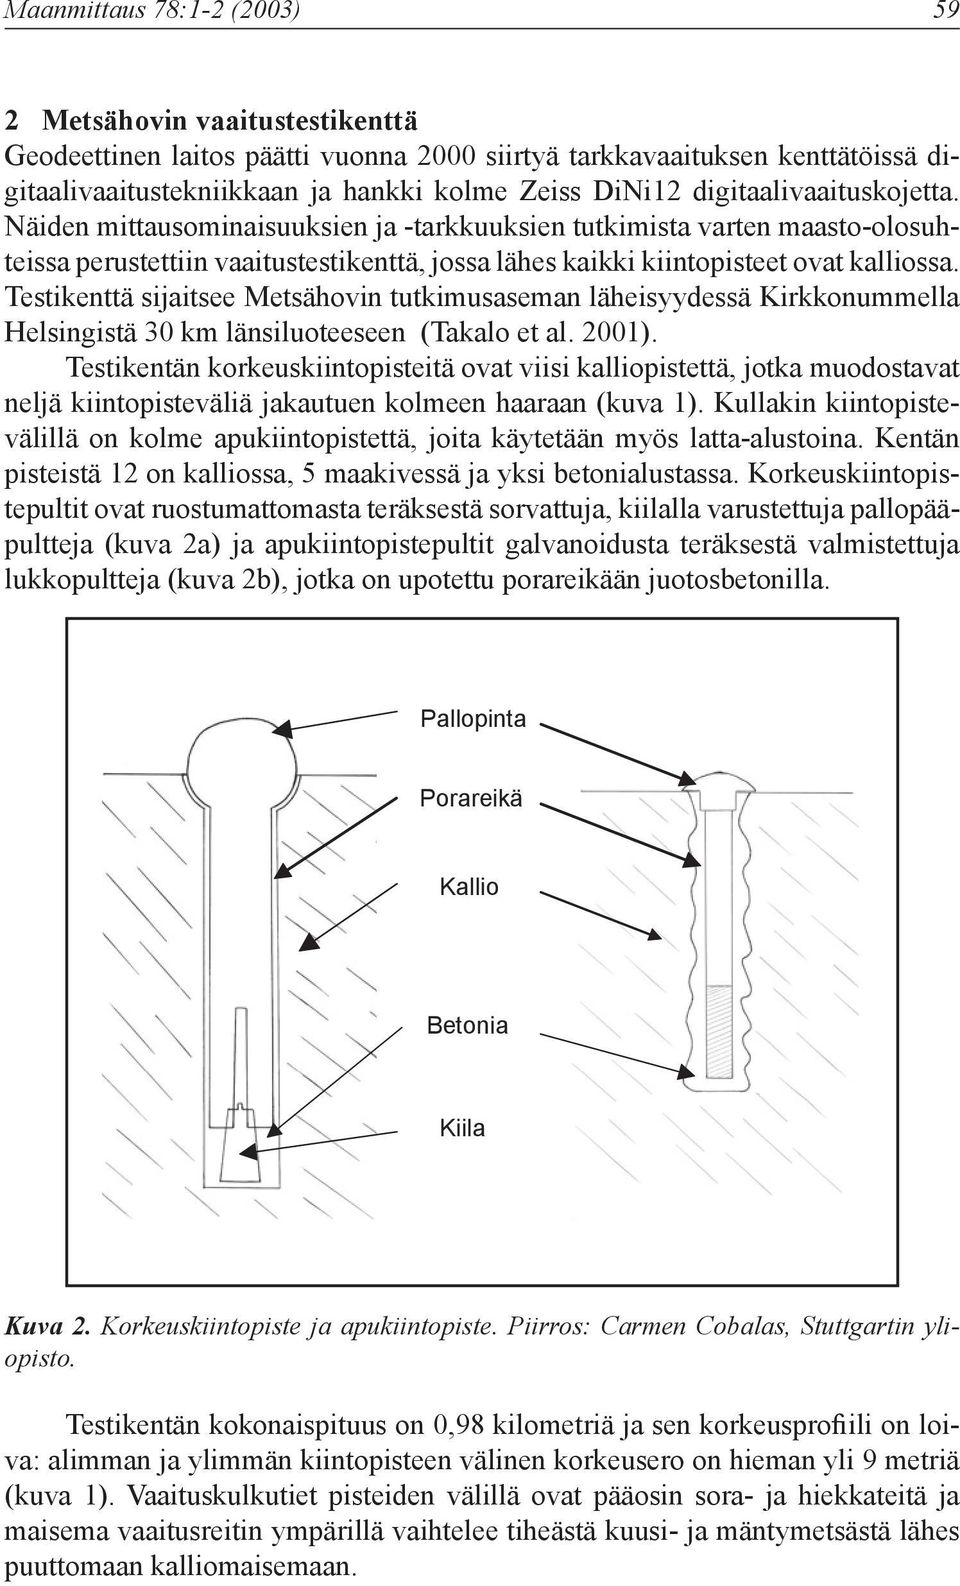 Testikenttä sijaitsee Metsähovin tutkimusaseman läheisyydessä Kirkkonummella Helsingistä 30 km länsiluoteeseen (Takalo et al. 2001).